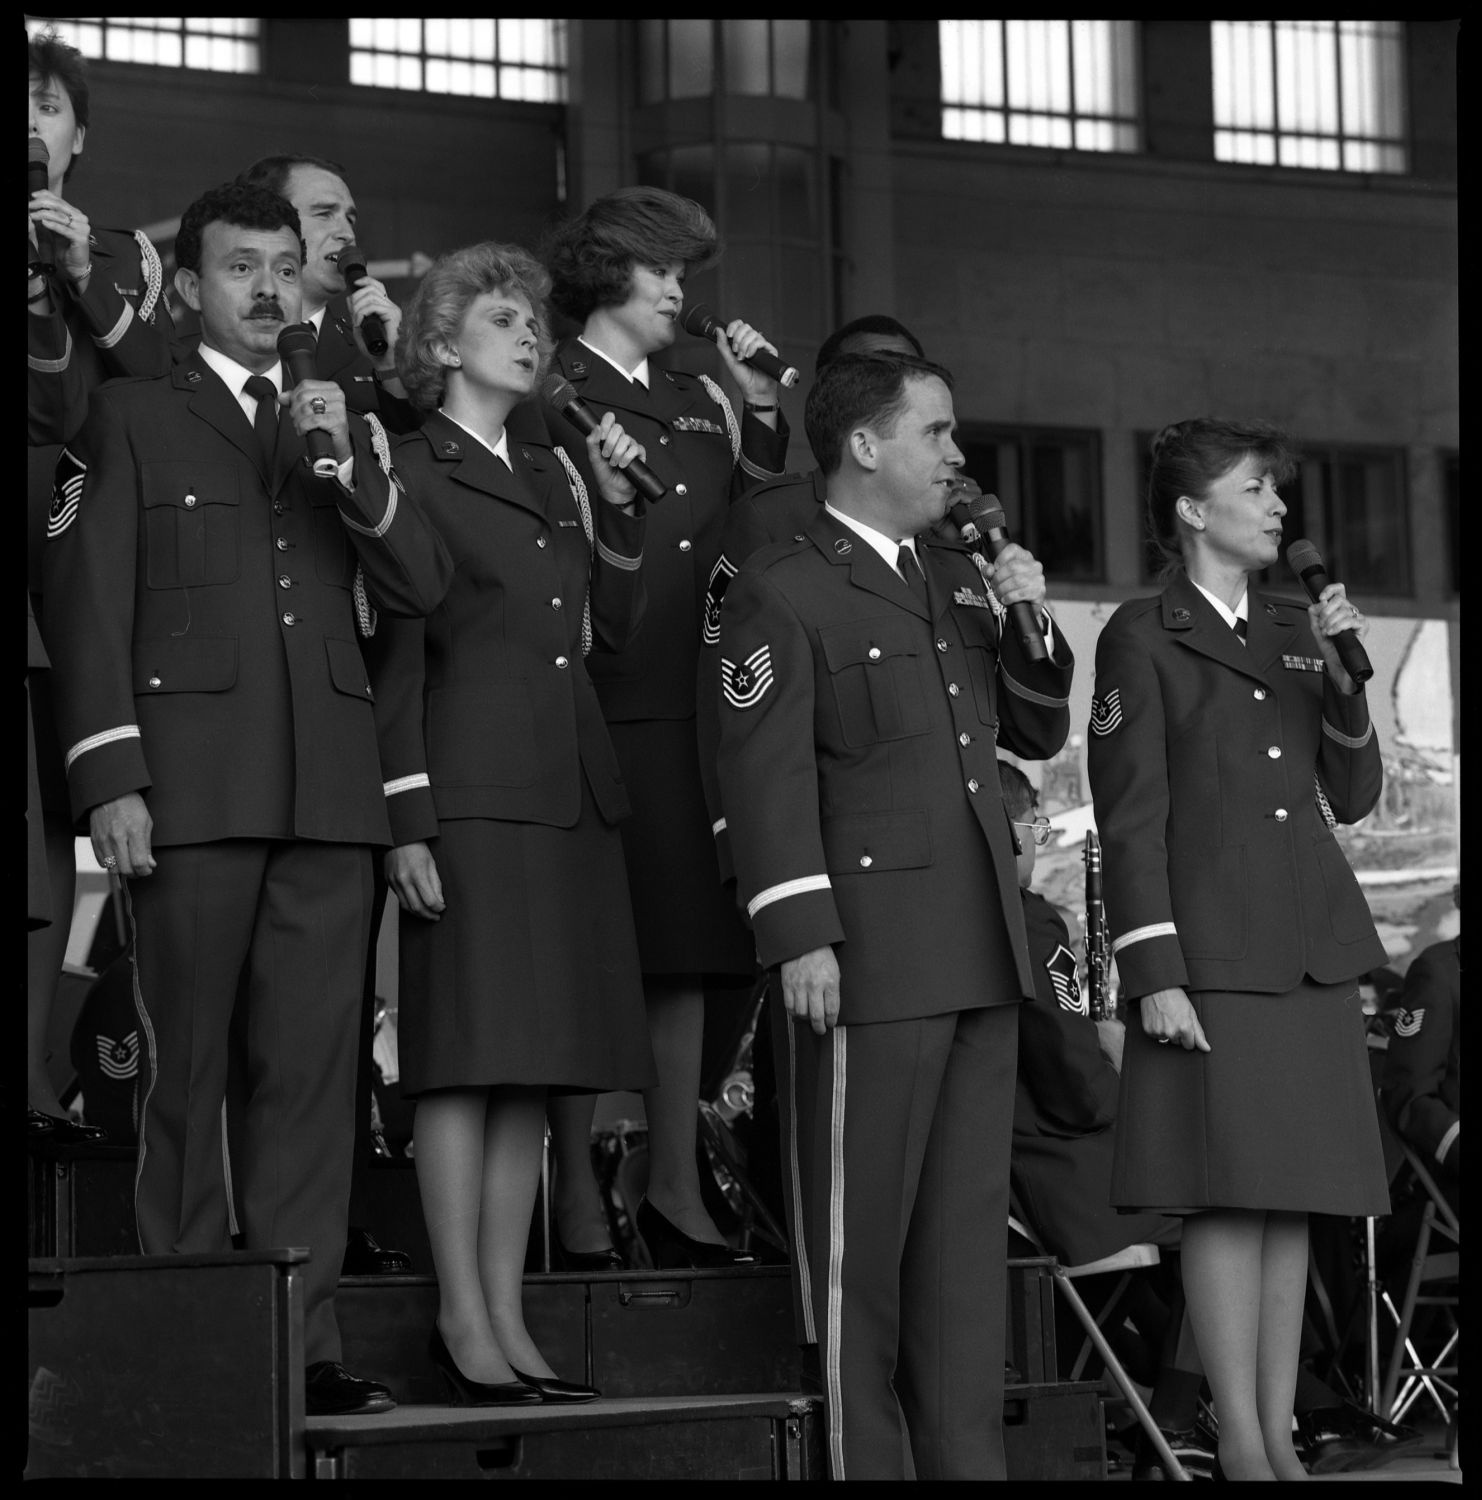 s/w-Fotografie: Tag der offenen Tür auf der Tempelhof Air Base in Berlin-Tempelhof (AlliiertenMuseum/U.S. Army Photograph Public Domain Mark)